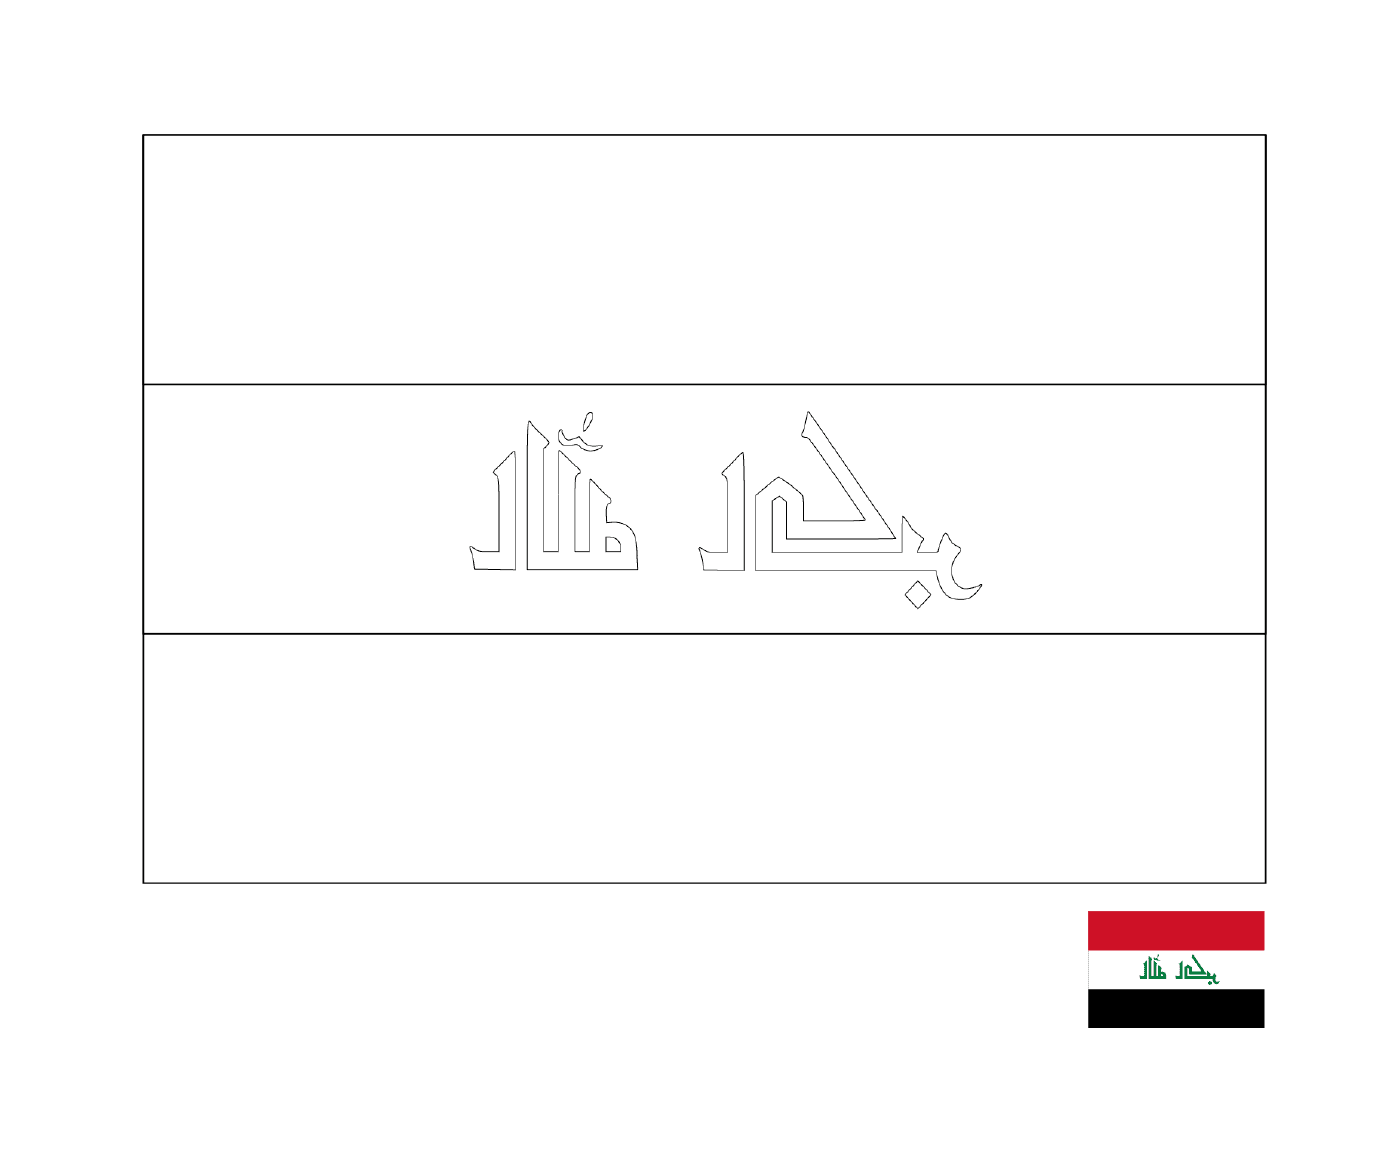  इराक का झंडा 